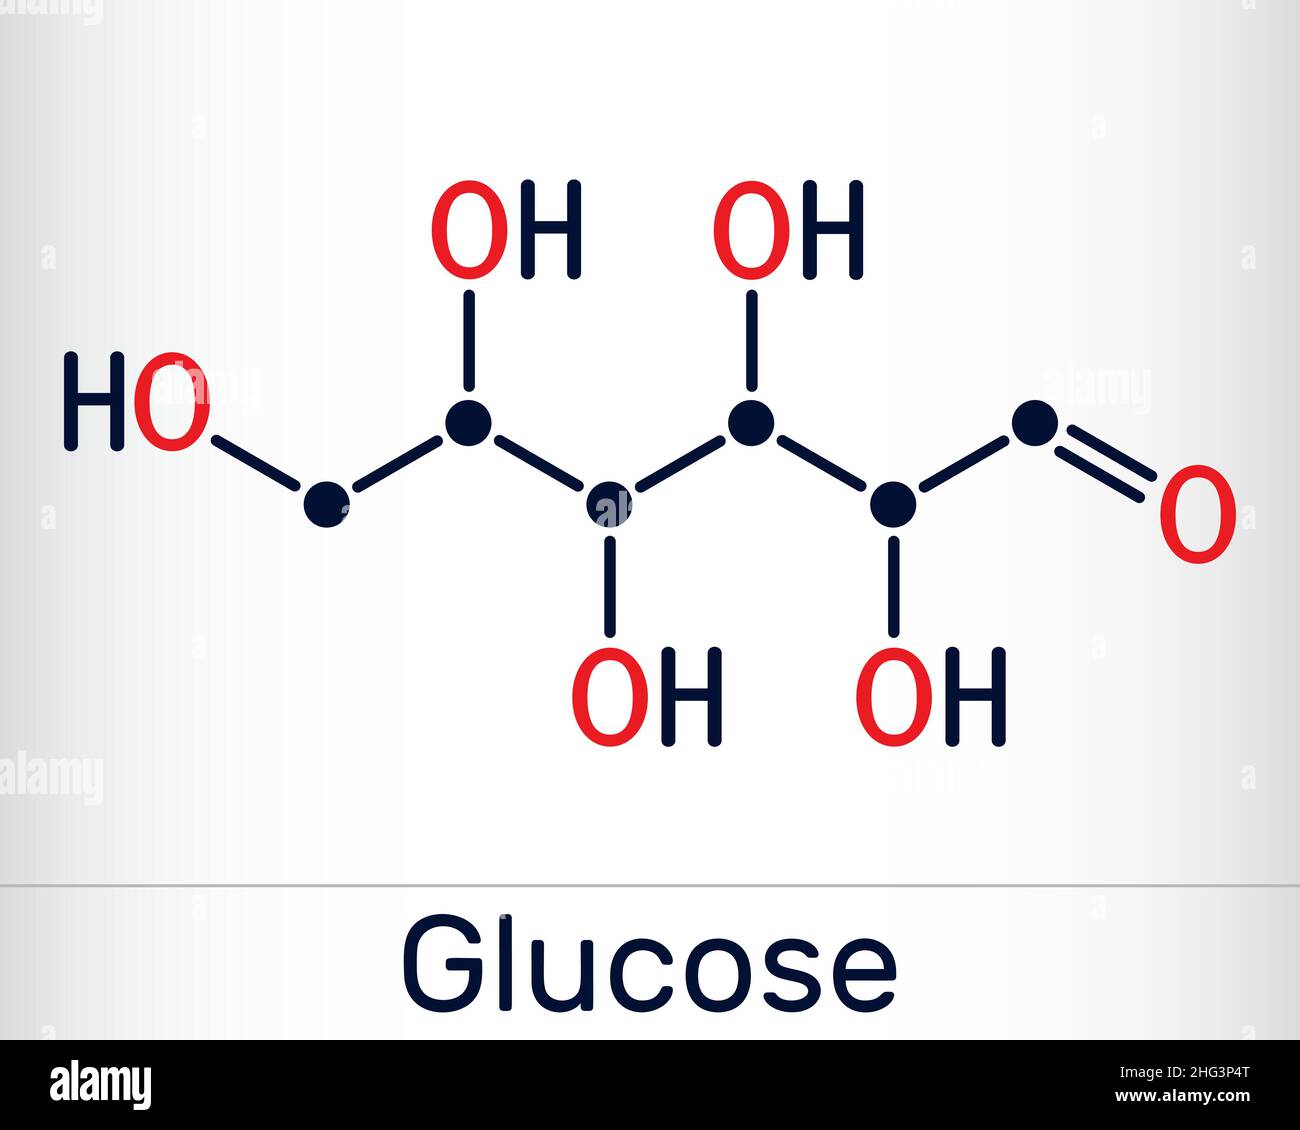 Glukose, Dextrose, D-Glukose, Glucopyranose, C6H12O6-Molekül. Es ist einfach Zucker, Monosaccharid, Unterkategorie der Kohlenhydrate. Skelettchemikalien für Stock Vektor